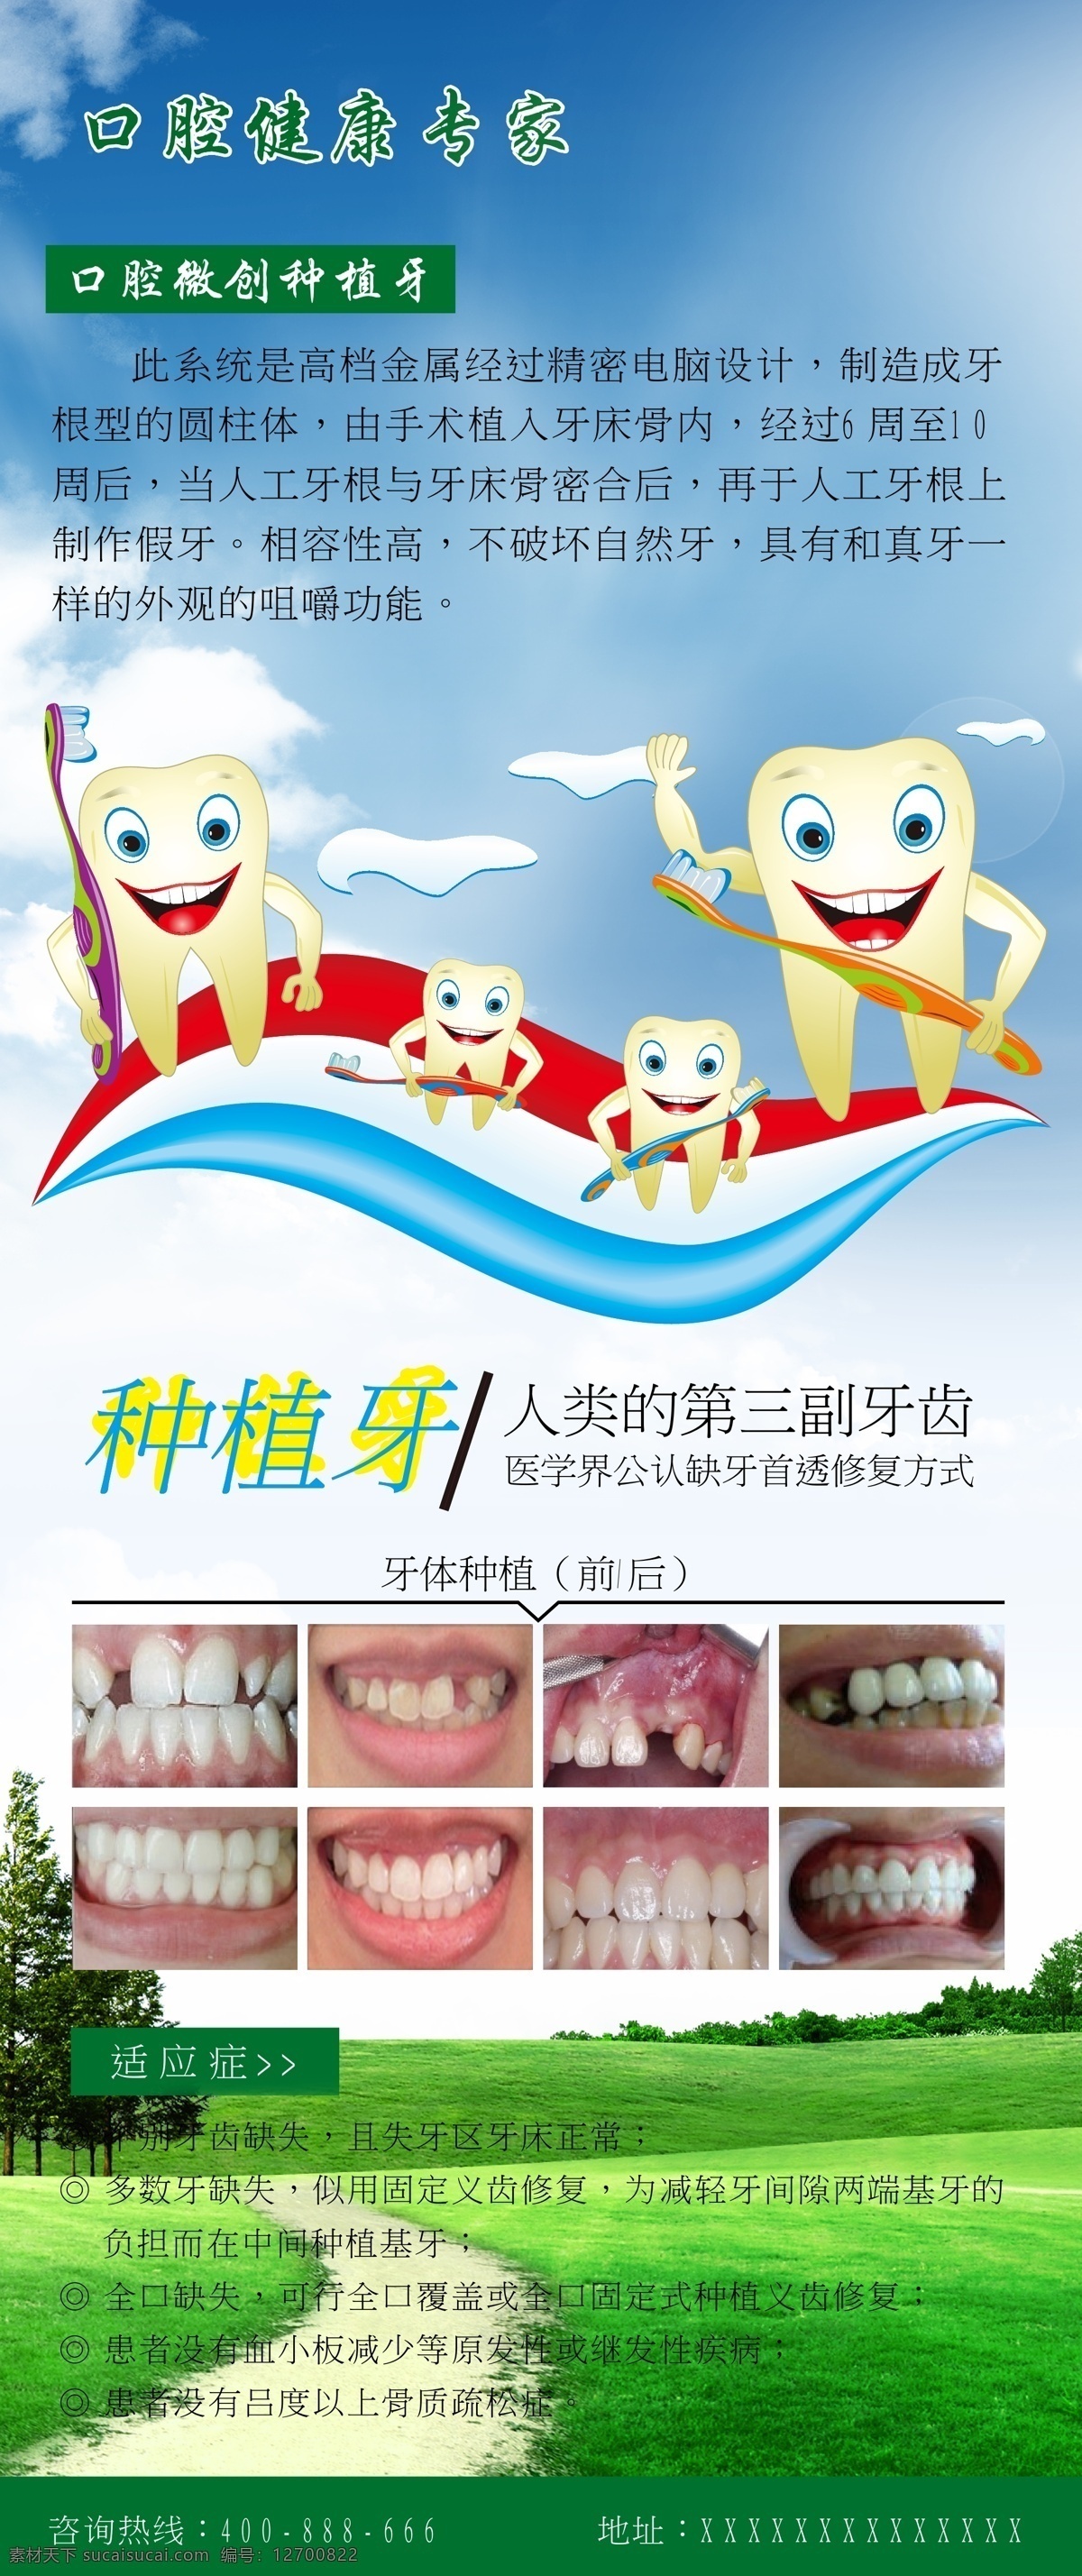 牙齿海报 牙 种植牙 海报 易拉宝 x展架 牙齿 牙齿失量图 口腔专家 矢量